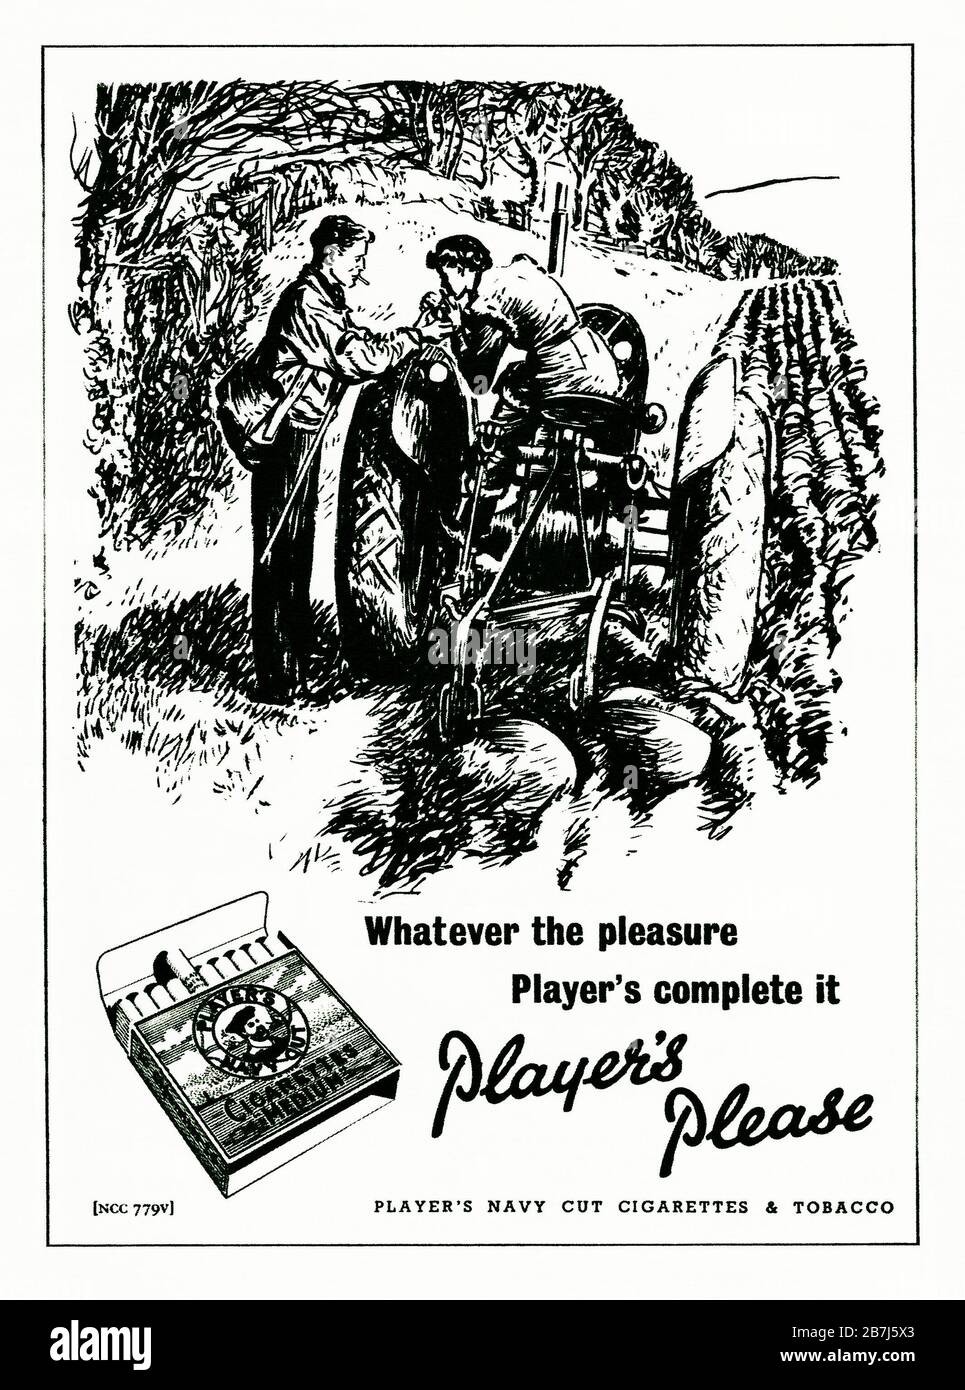 Un anuncio de la década de 1950 para los cigarrillos "Medium" de Player's Navy Cut. El anuncio apareció en una revista publicada en el Reino Unido en febrero de 1952. La ilustración incluye a una chica en un tractor y las palabras hacen hincapié en el placer de fumar y la famosa frase "Player's Please". La caja de los cigarrillos presentó la famosa imagen marinera en el centro del diseño - con la palabra 'Héroe' en su gorra. John Player and Sons, con sede en Nottingham, se convirtió en parte de Imperial Tobacco en 1901. Foto de stock